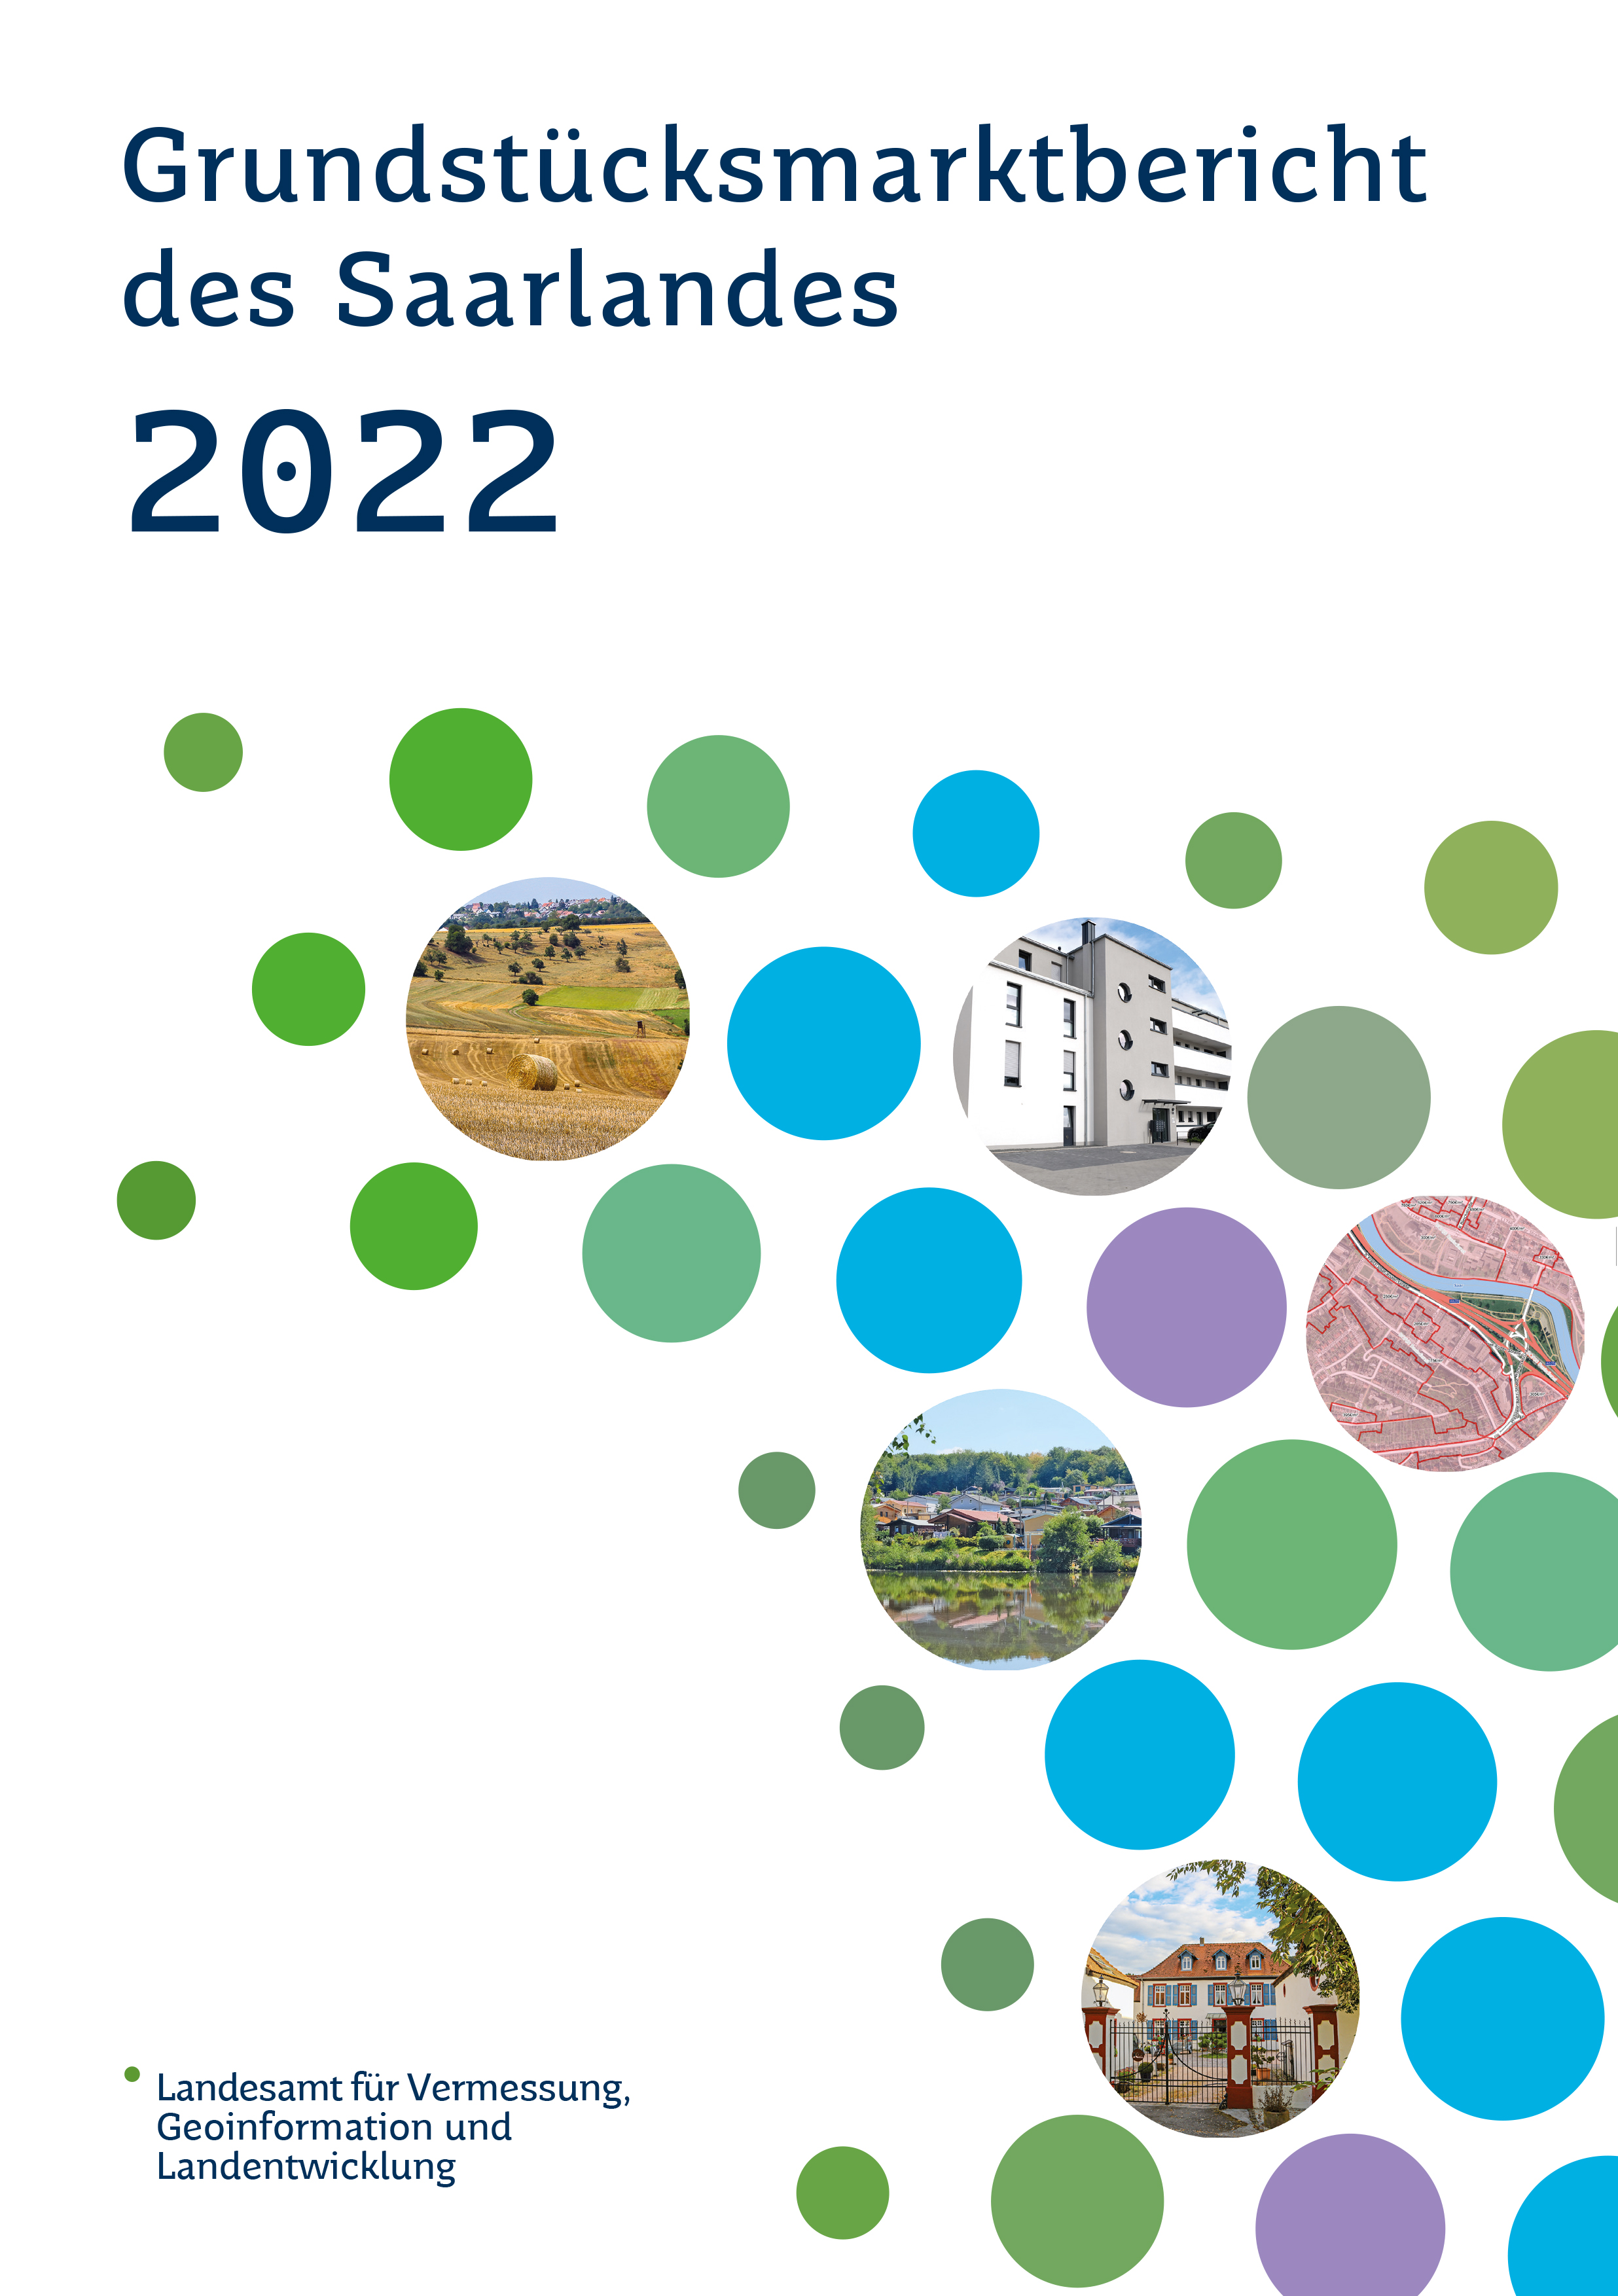 Grundstücksmarktbericht 2022